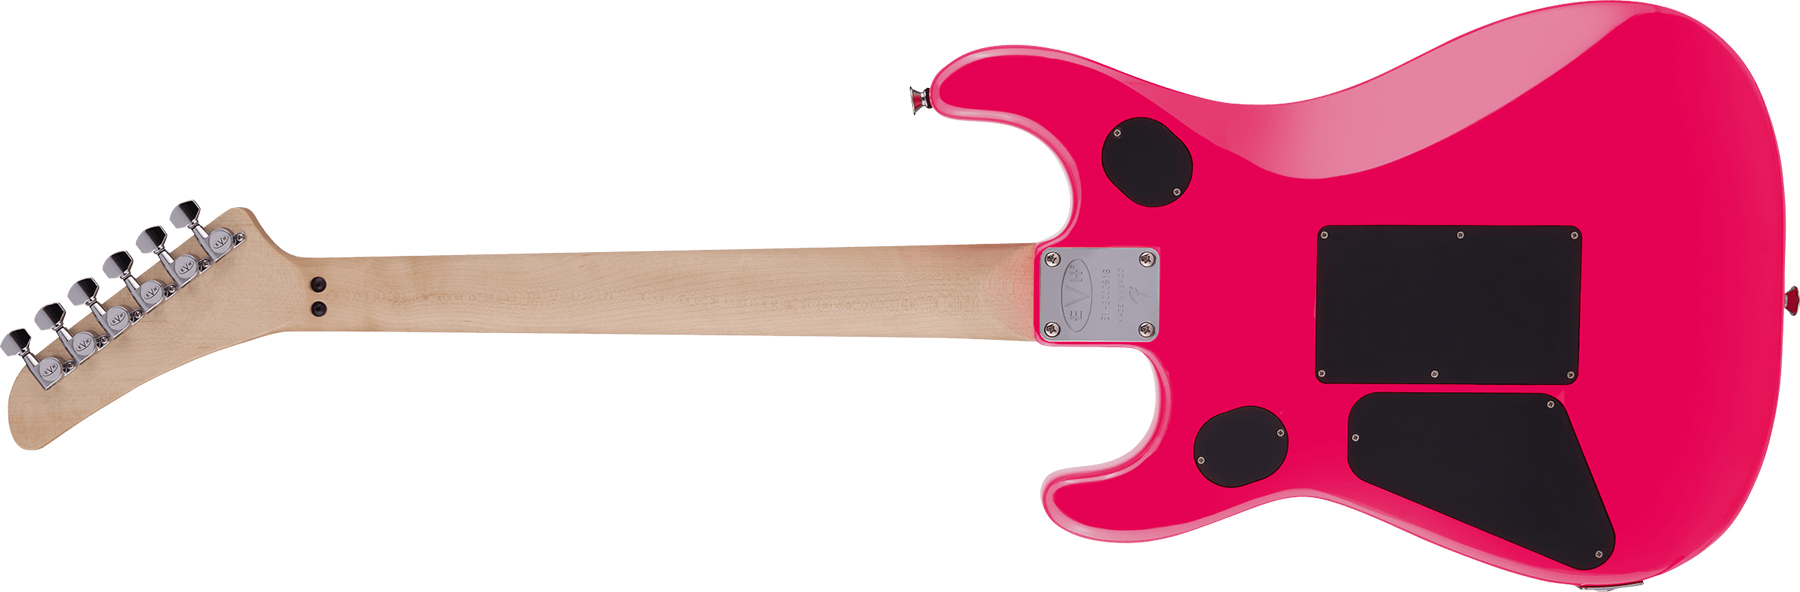 Evh 5150 Standard Mex 2h Fr Mn - Neon Pink - E-Gitarre in Str-Form - Variation 1